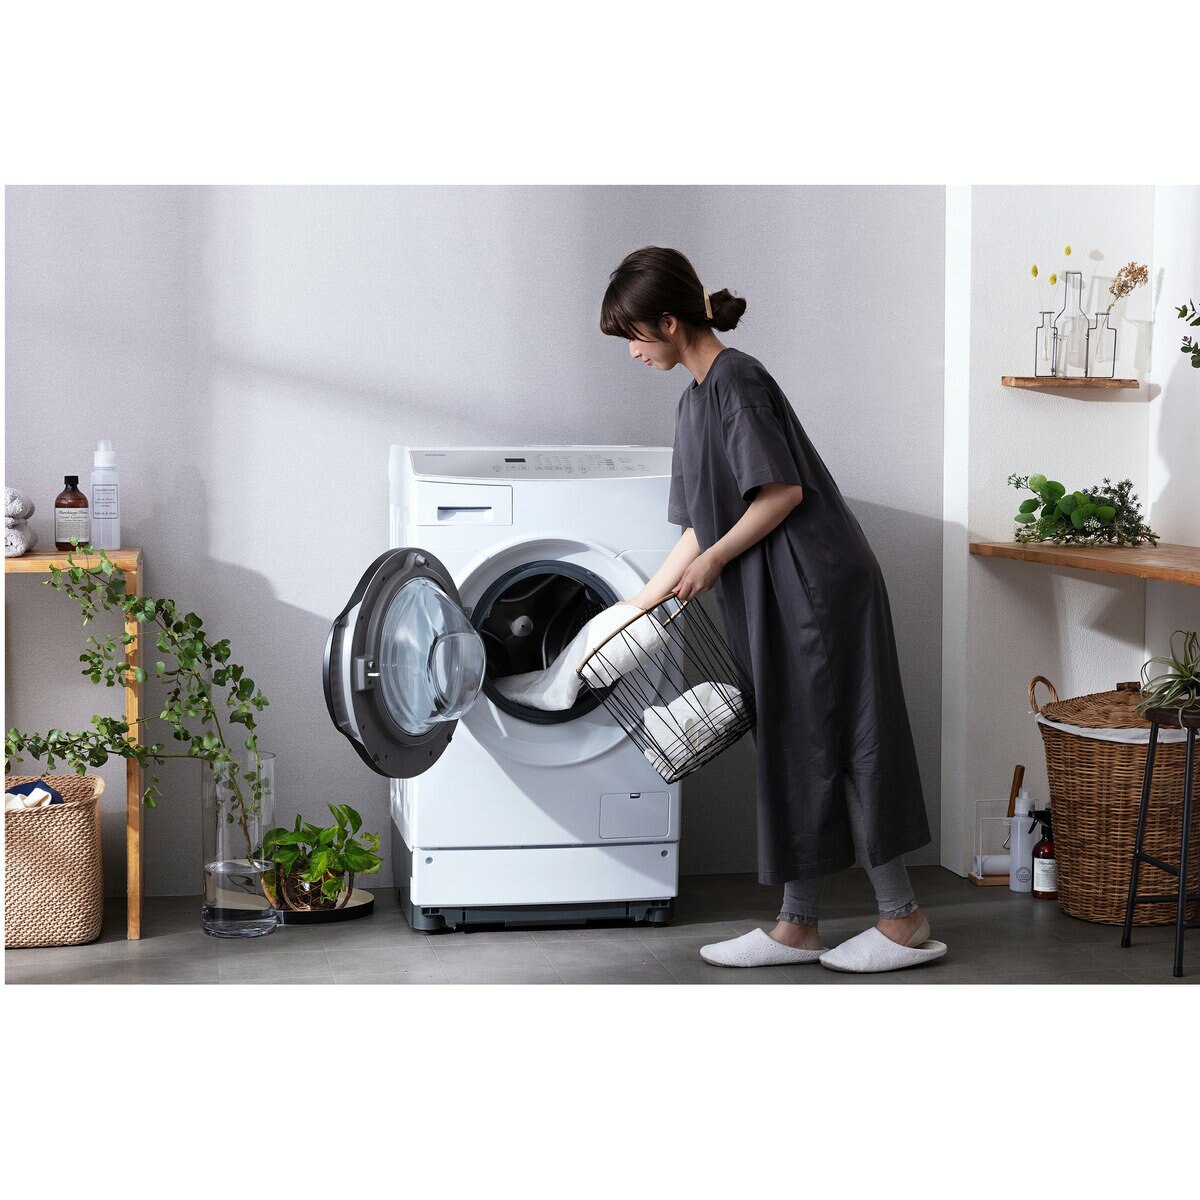 グランドセール 洗濯機 ドラム式 8kg 設置無料 アイリスオーヤマ ドラム式洗濯機 ドラム式洗濯機乾燥機 一人暮らし 新生活 FLK832 代引き不可